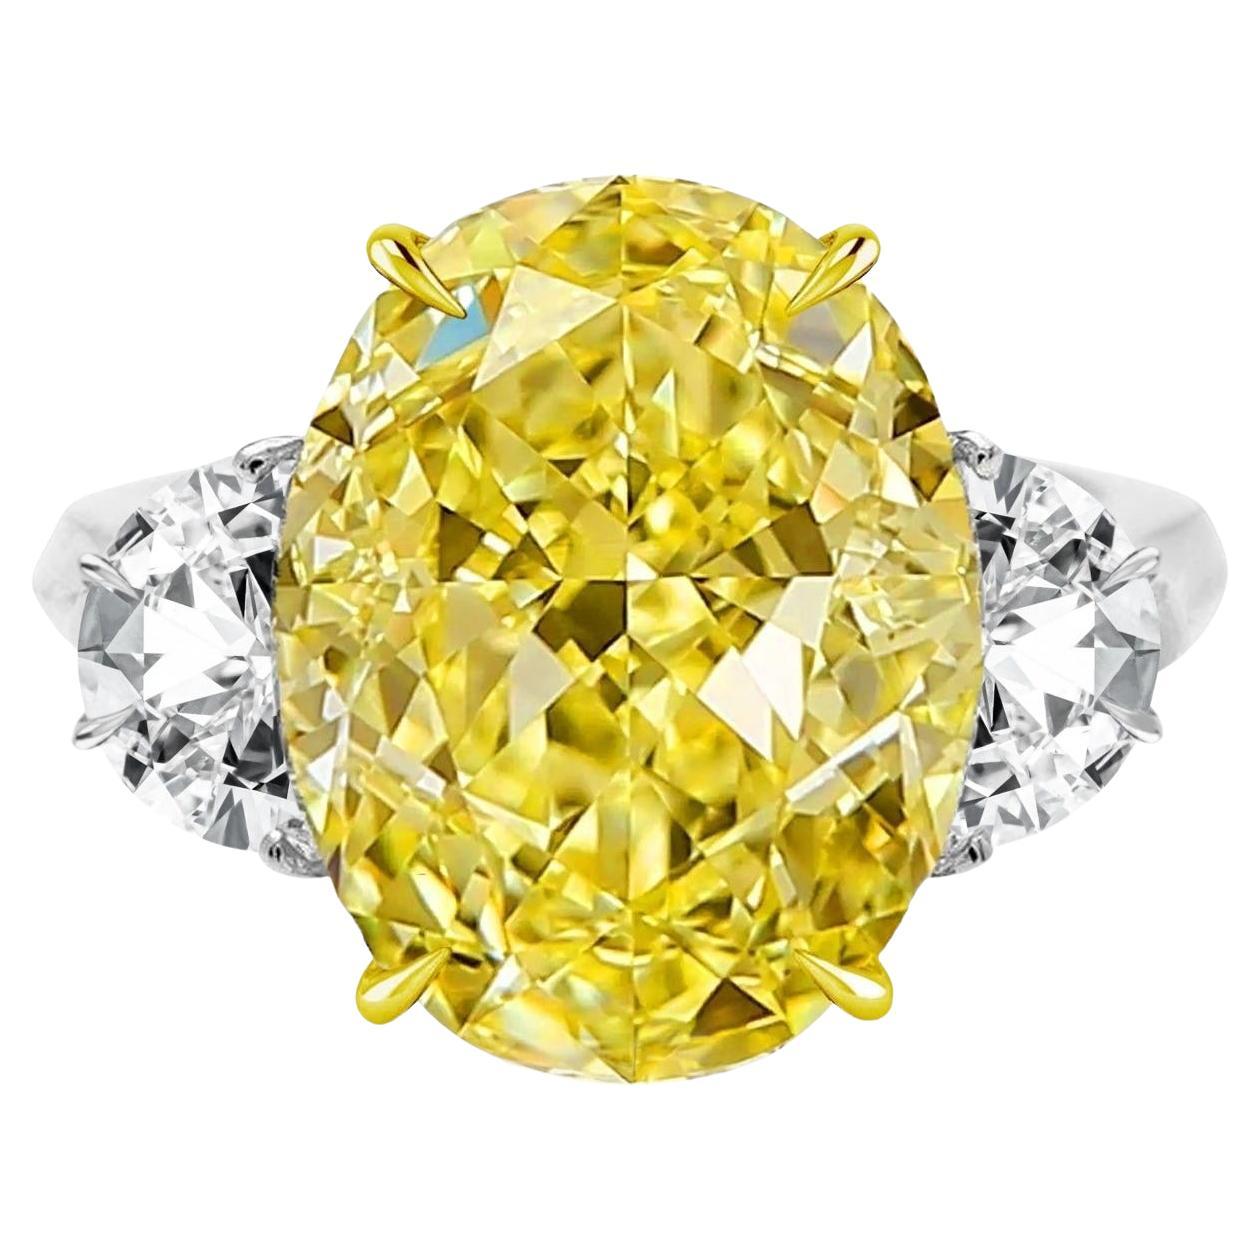 Bague à diamant ovale certifié GIA de 8 carats de couleur jaune intense fantaisie